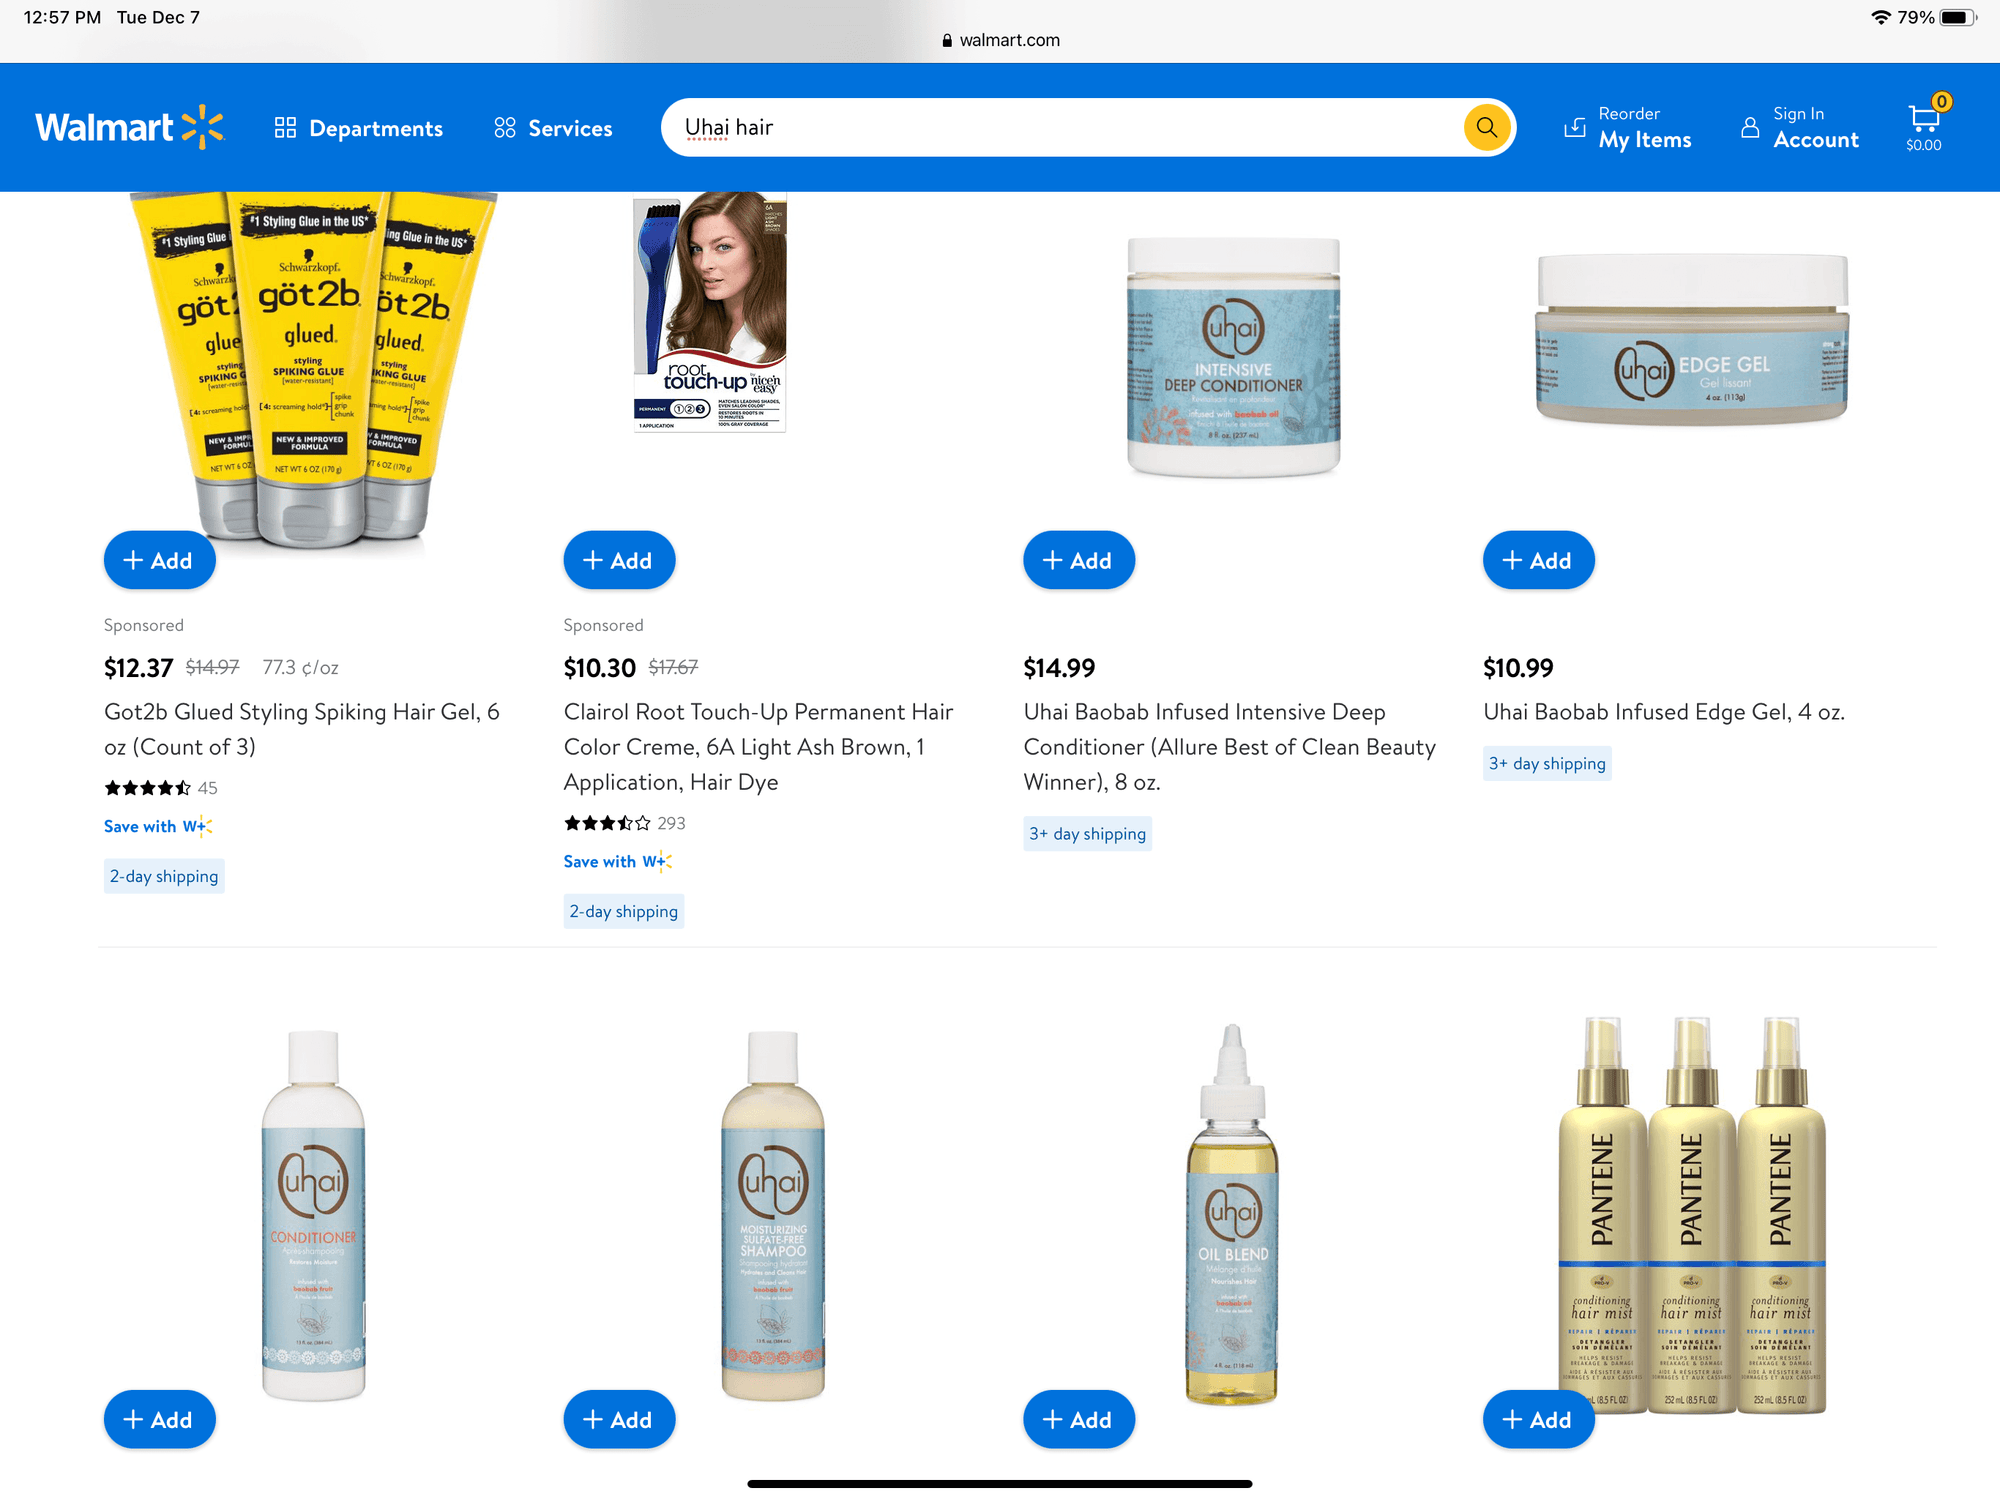 Uhai Hair is now available on Walmart.com!